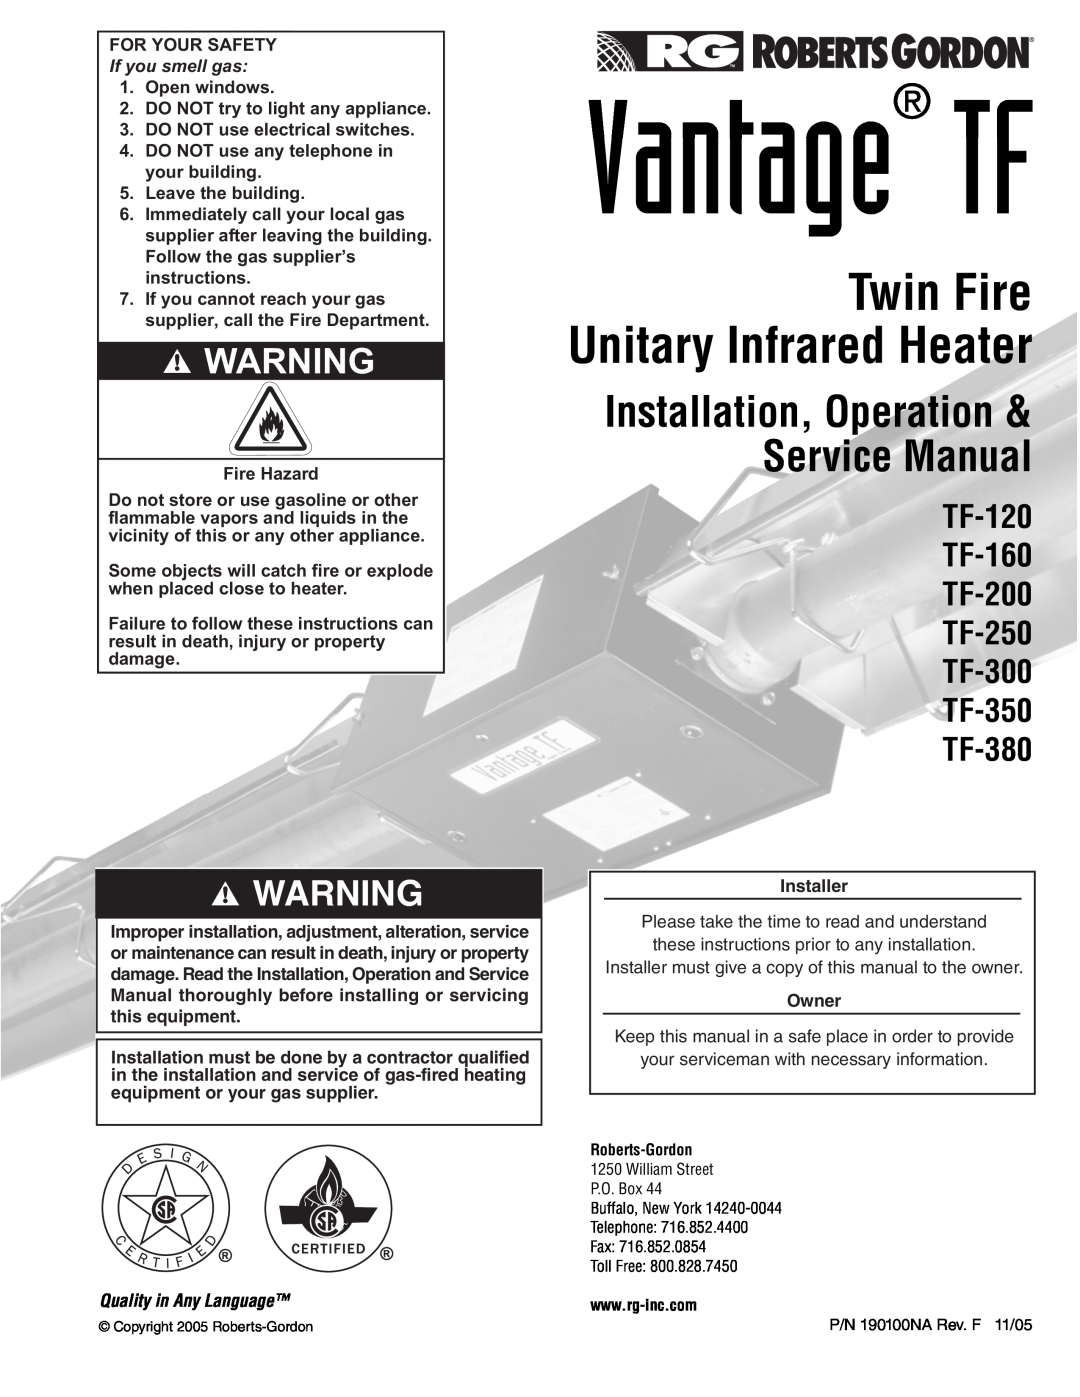 Roberts Gorden service manual Twin Fire Unitary Infrared Heater, TF-120 TF-160 TF-200 TF-250 TF-300 TF-350 TF-380 